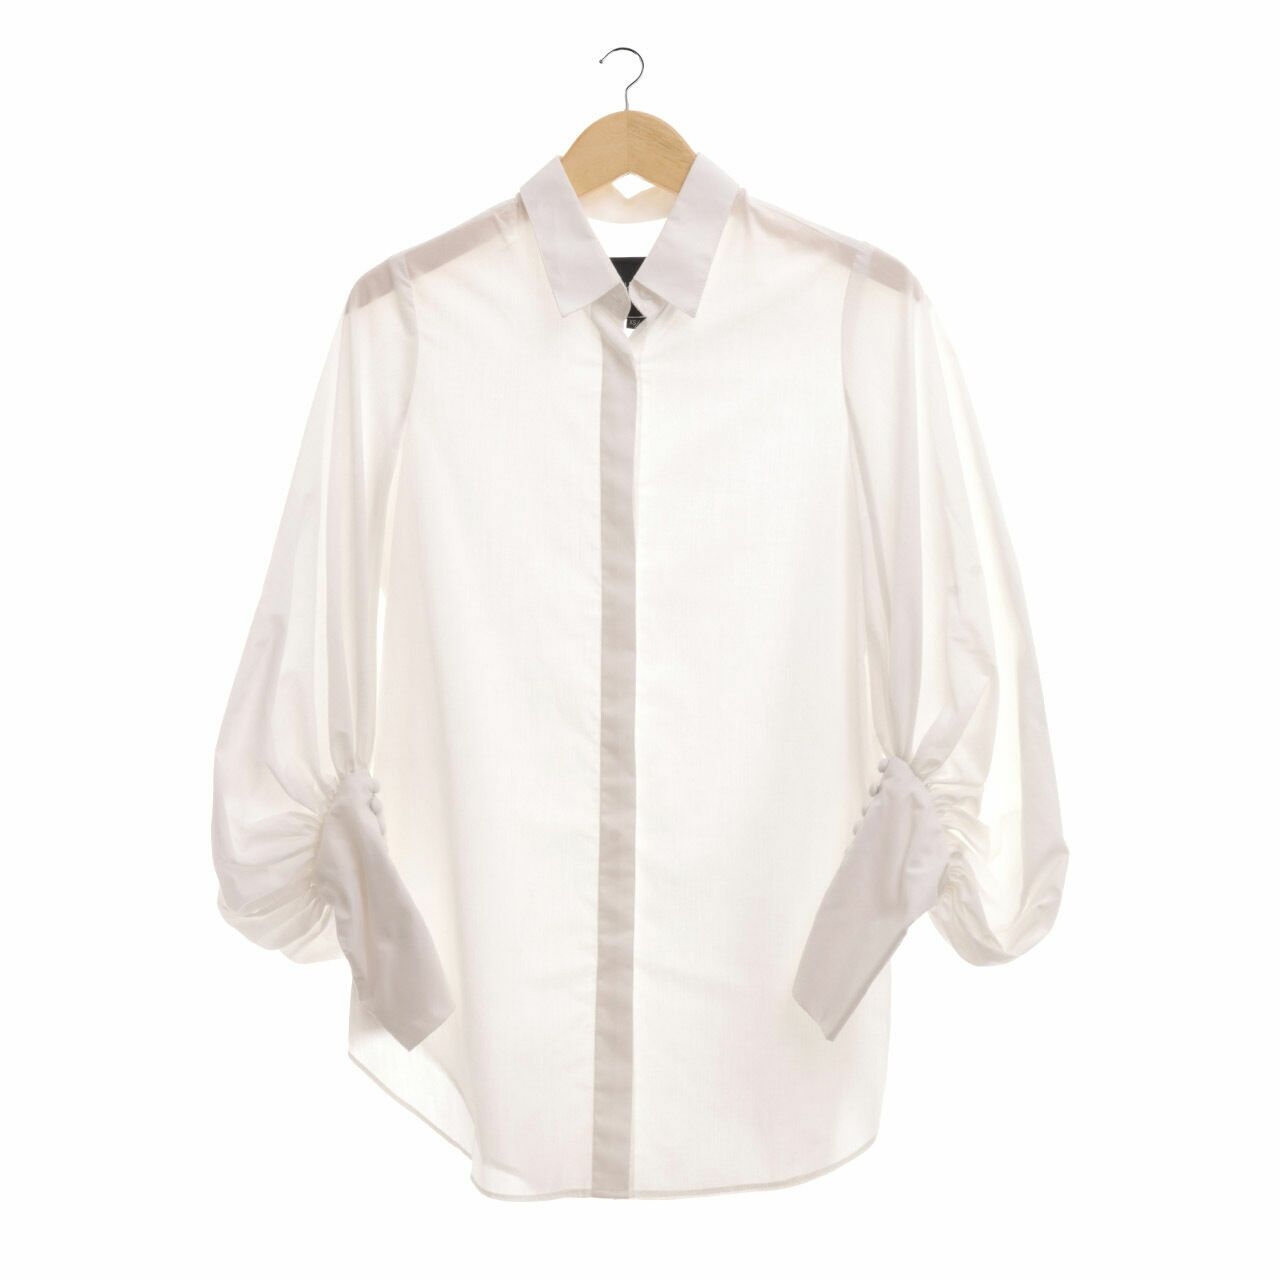 Barli Asmara White Shirt